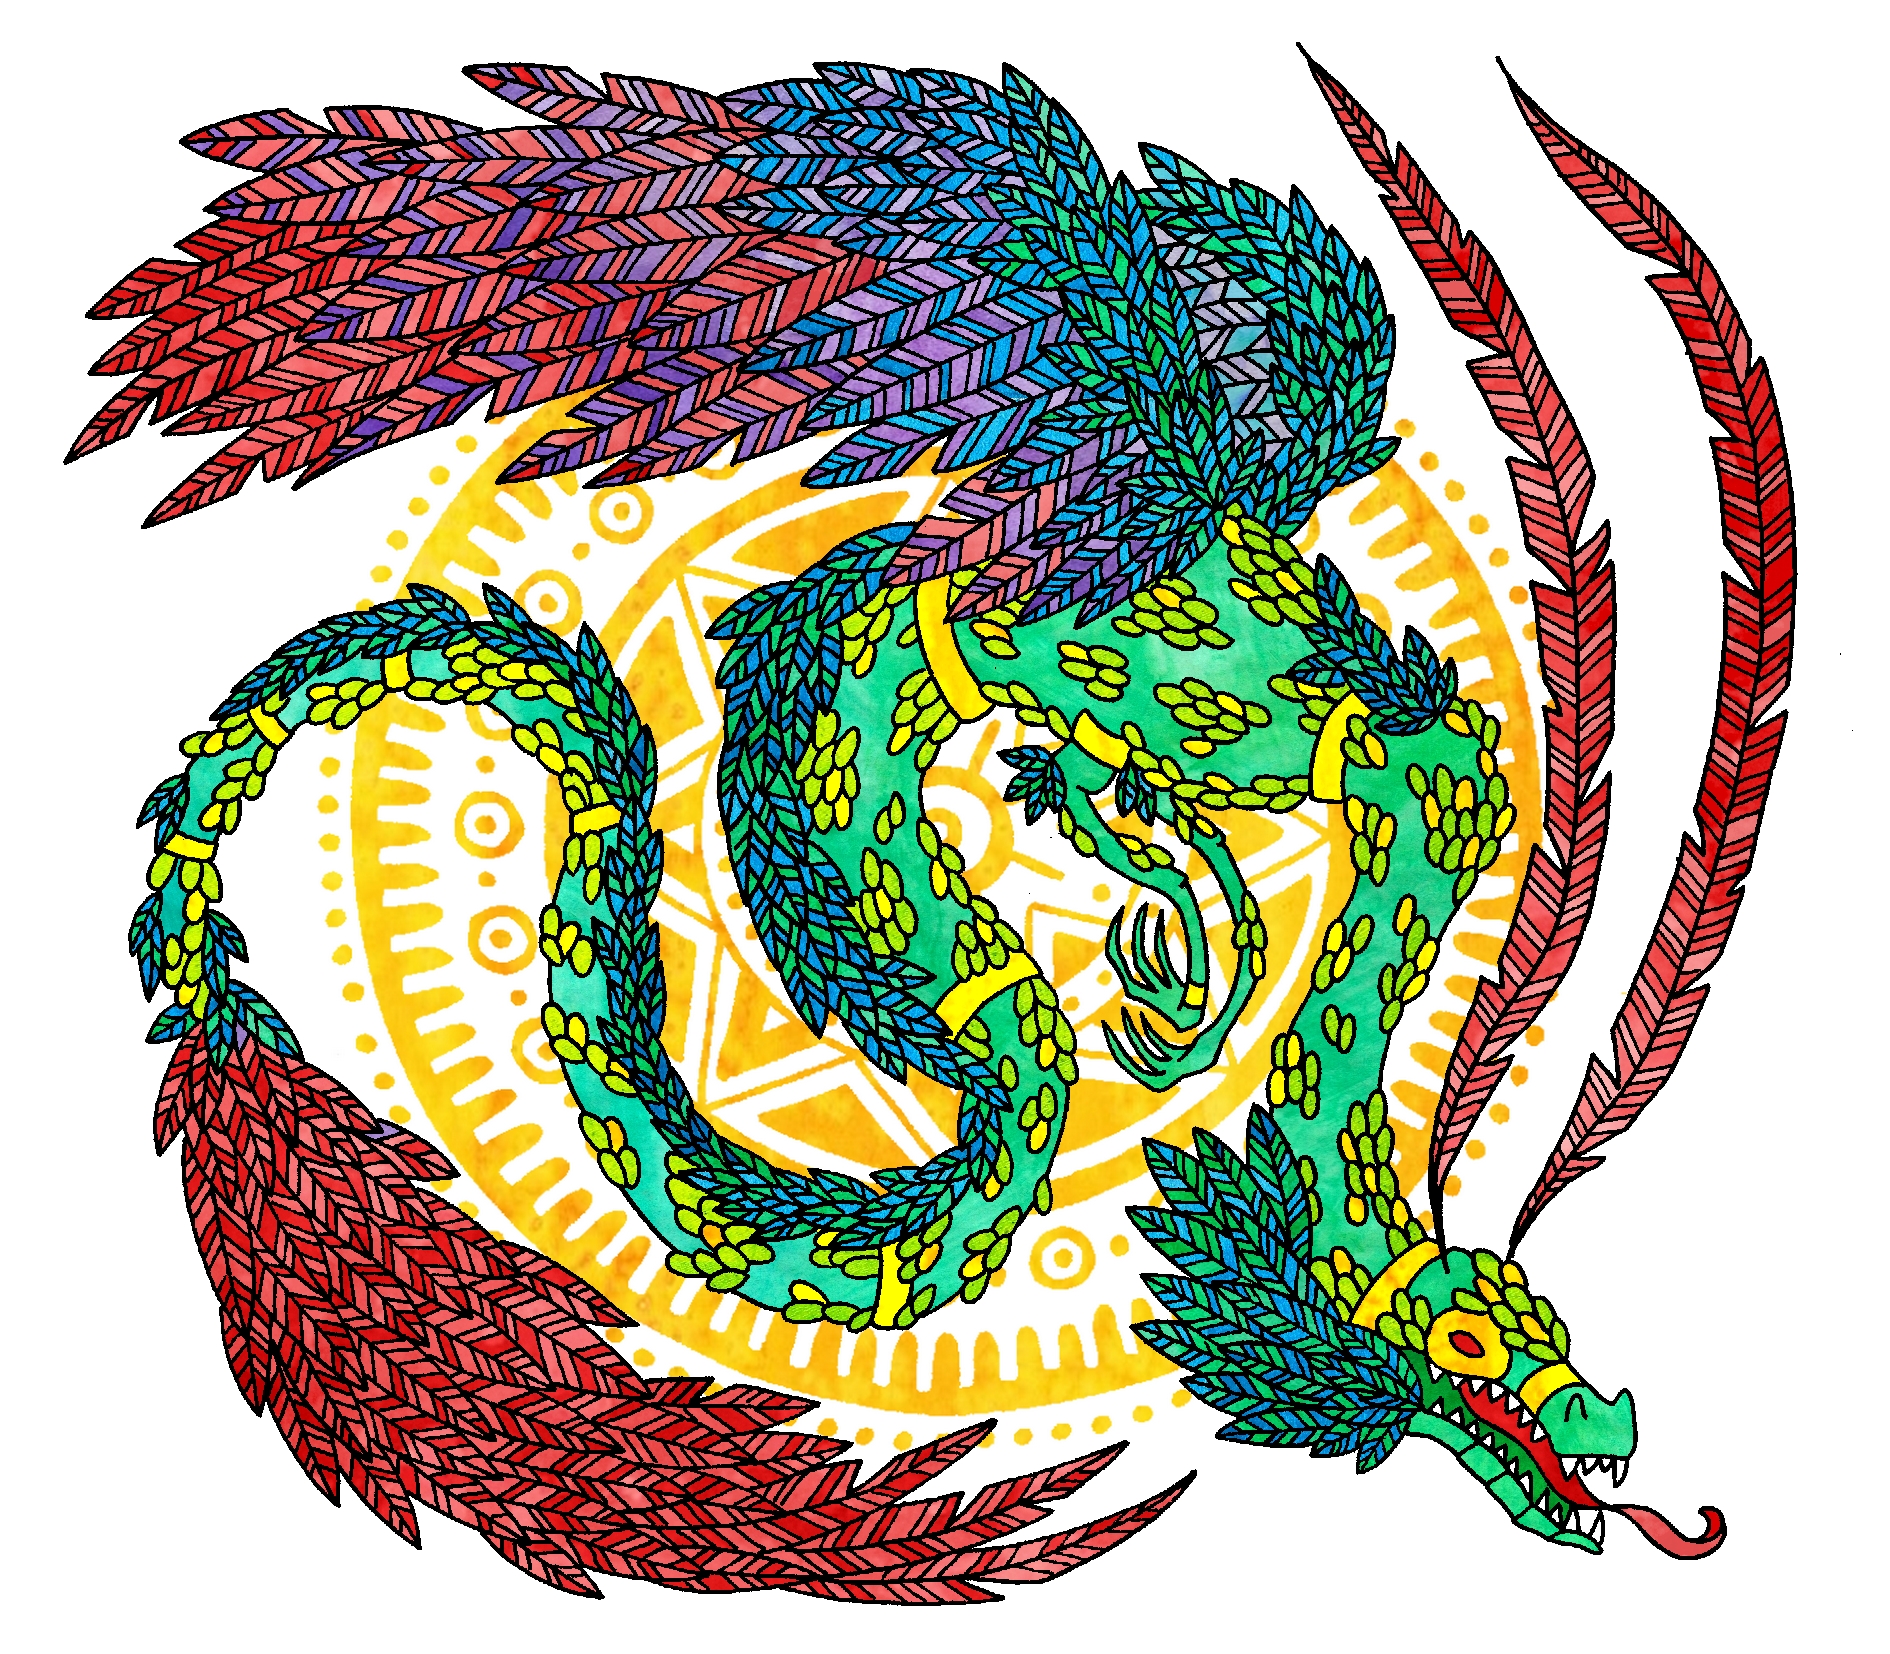 Quetzal.jpg